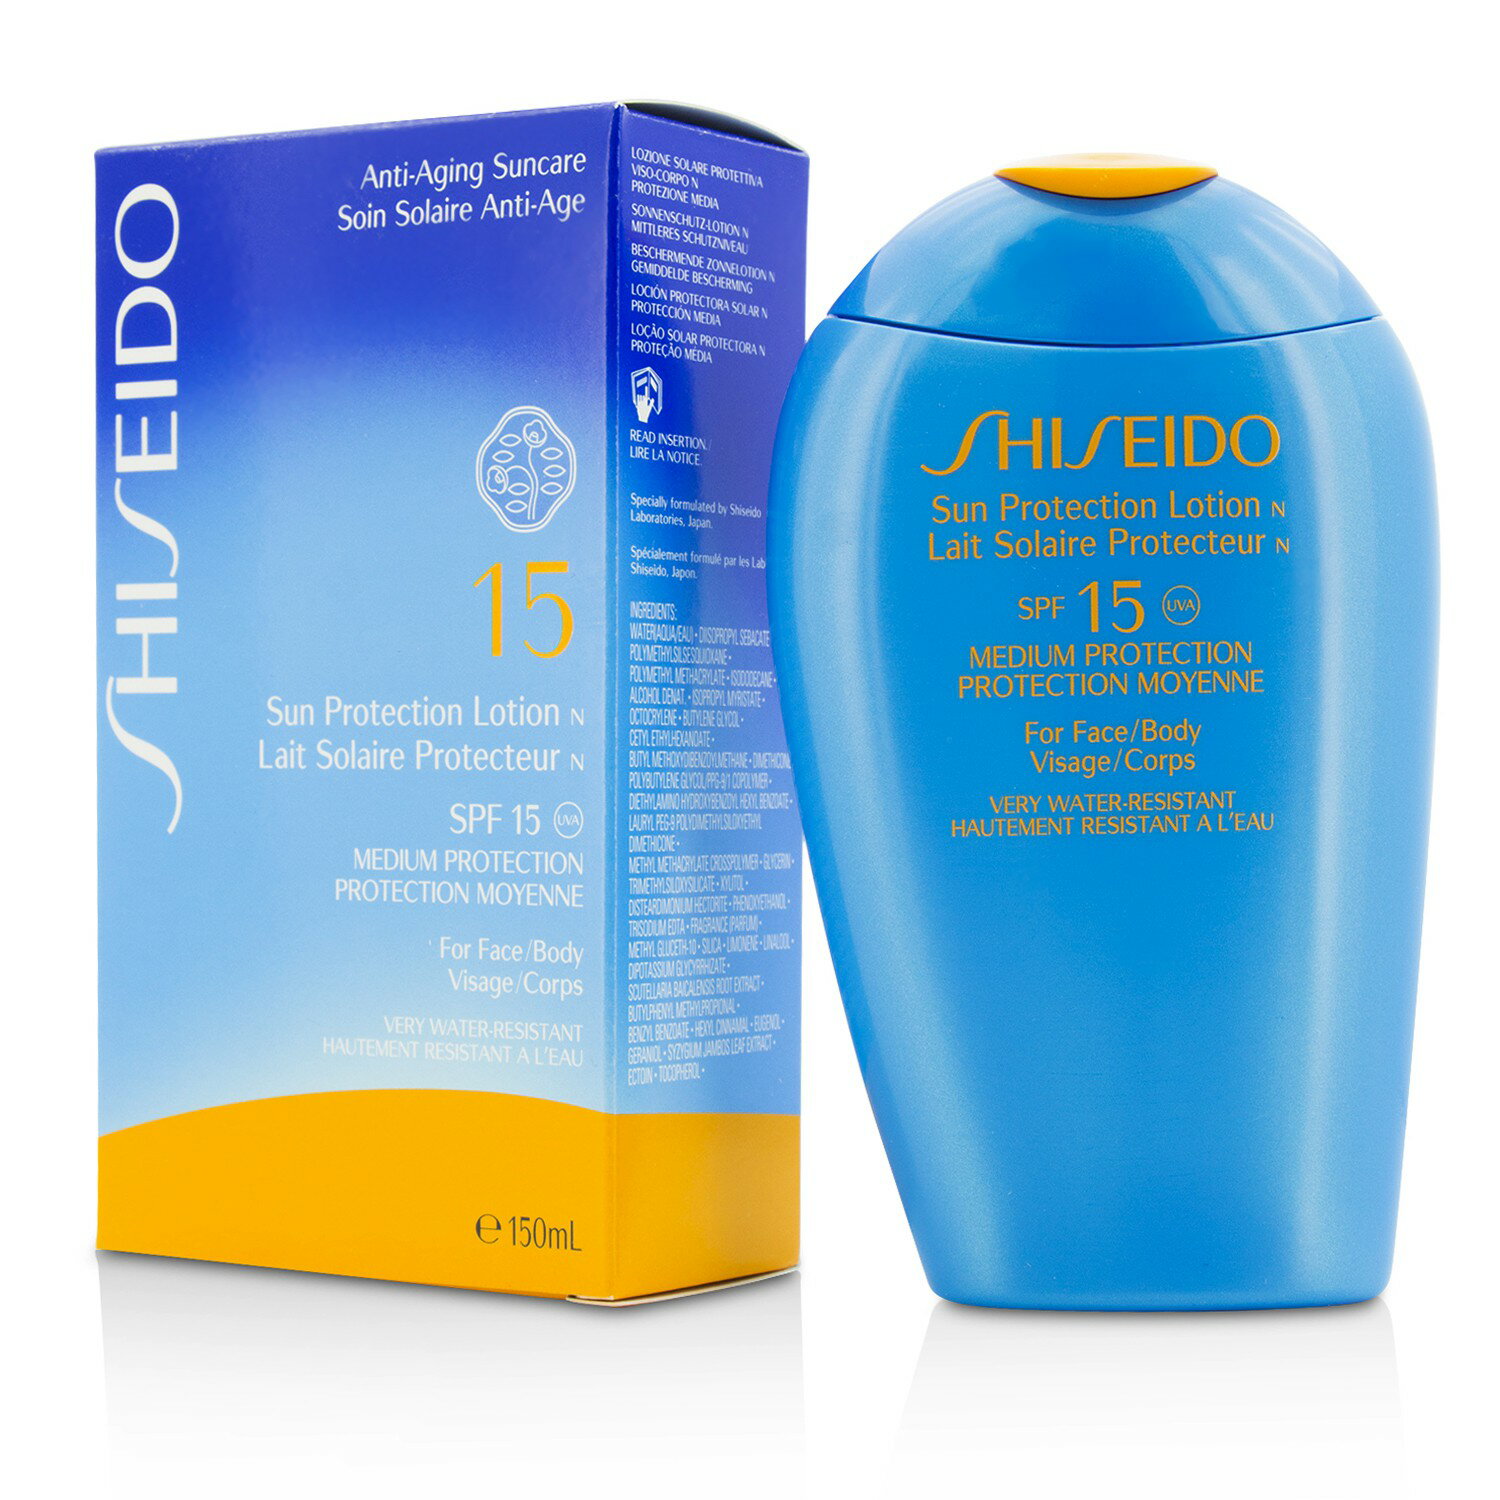 資生堂 Shiseido - 防曬乳 (臉&身體) Sun Protection Lotion N SPF 15 (For Face & Body)